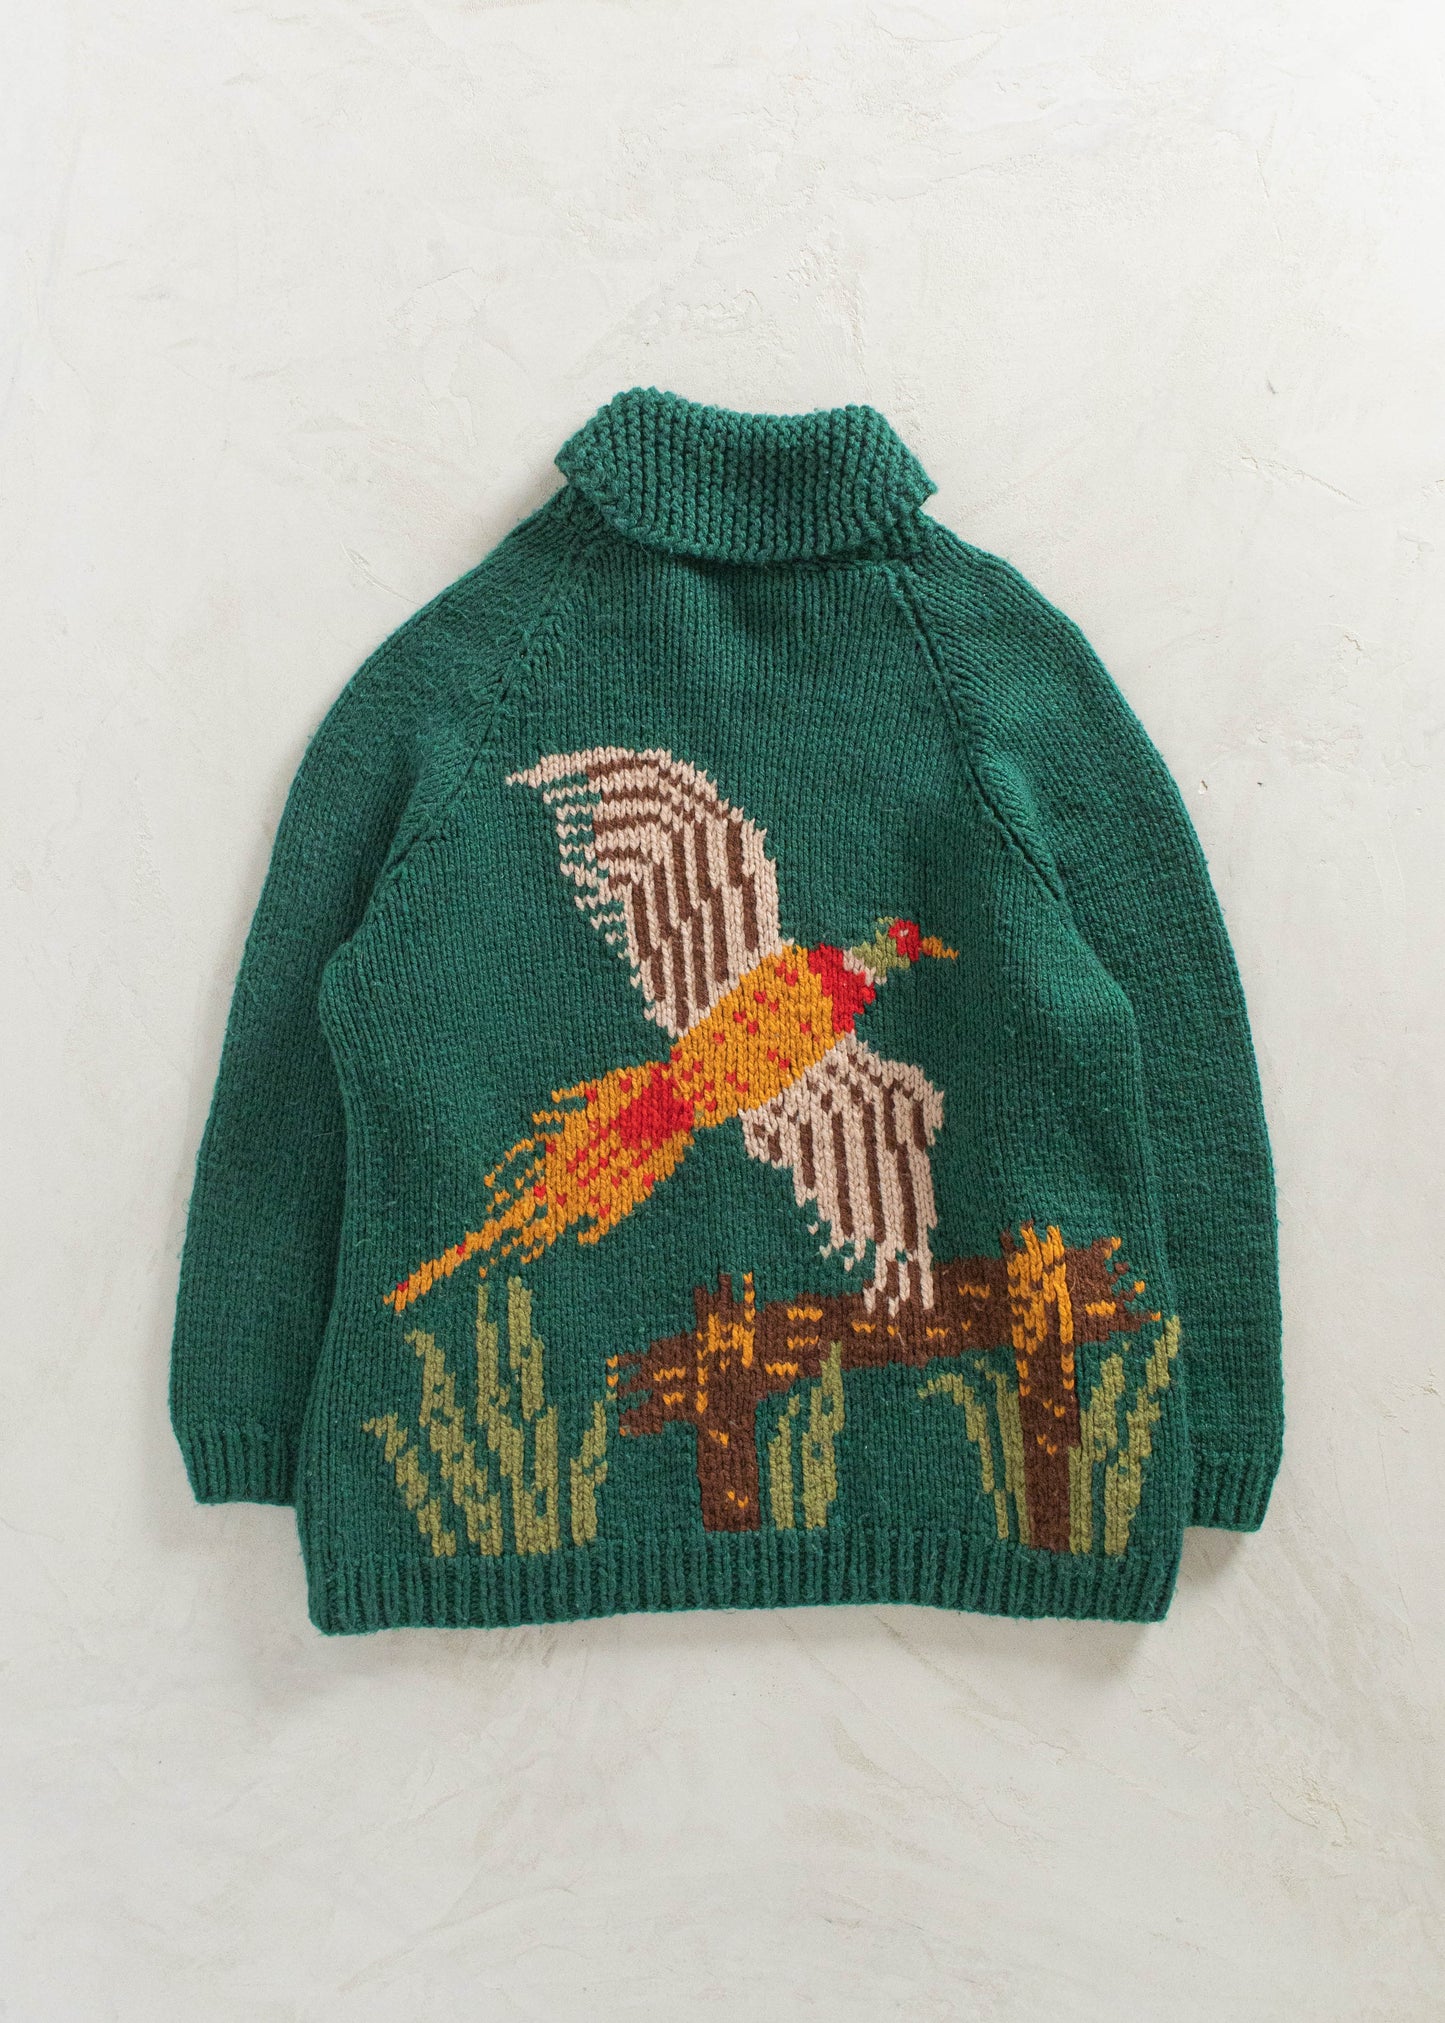 Vintage Pheasant Pattern Cowichan Style Wool Cardigan Size 2XL/3XL